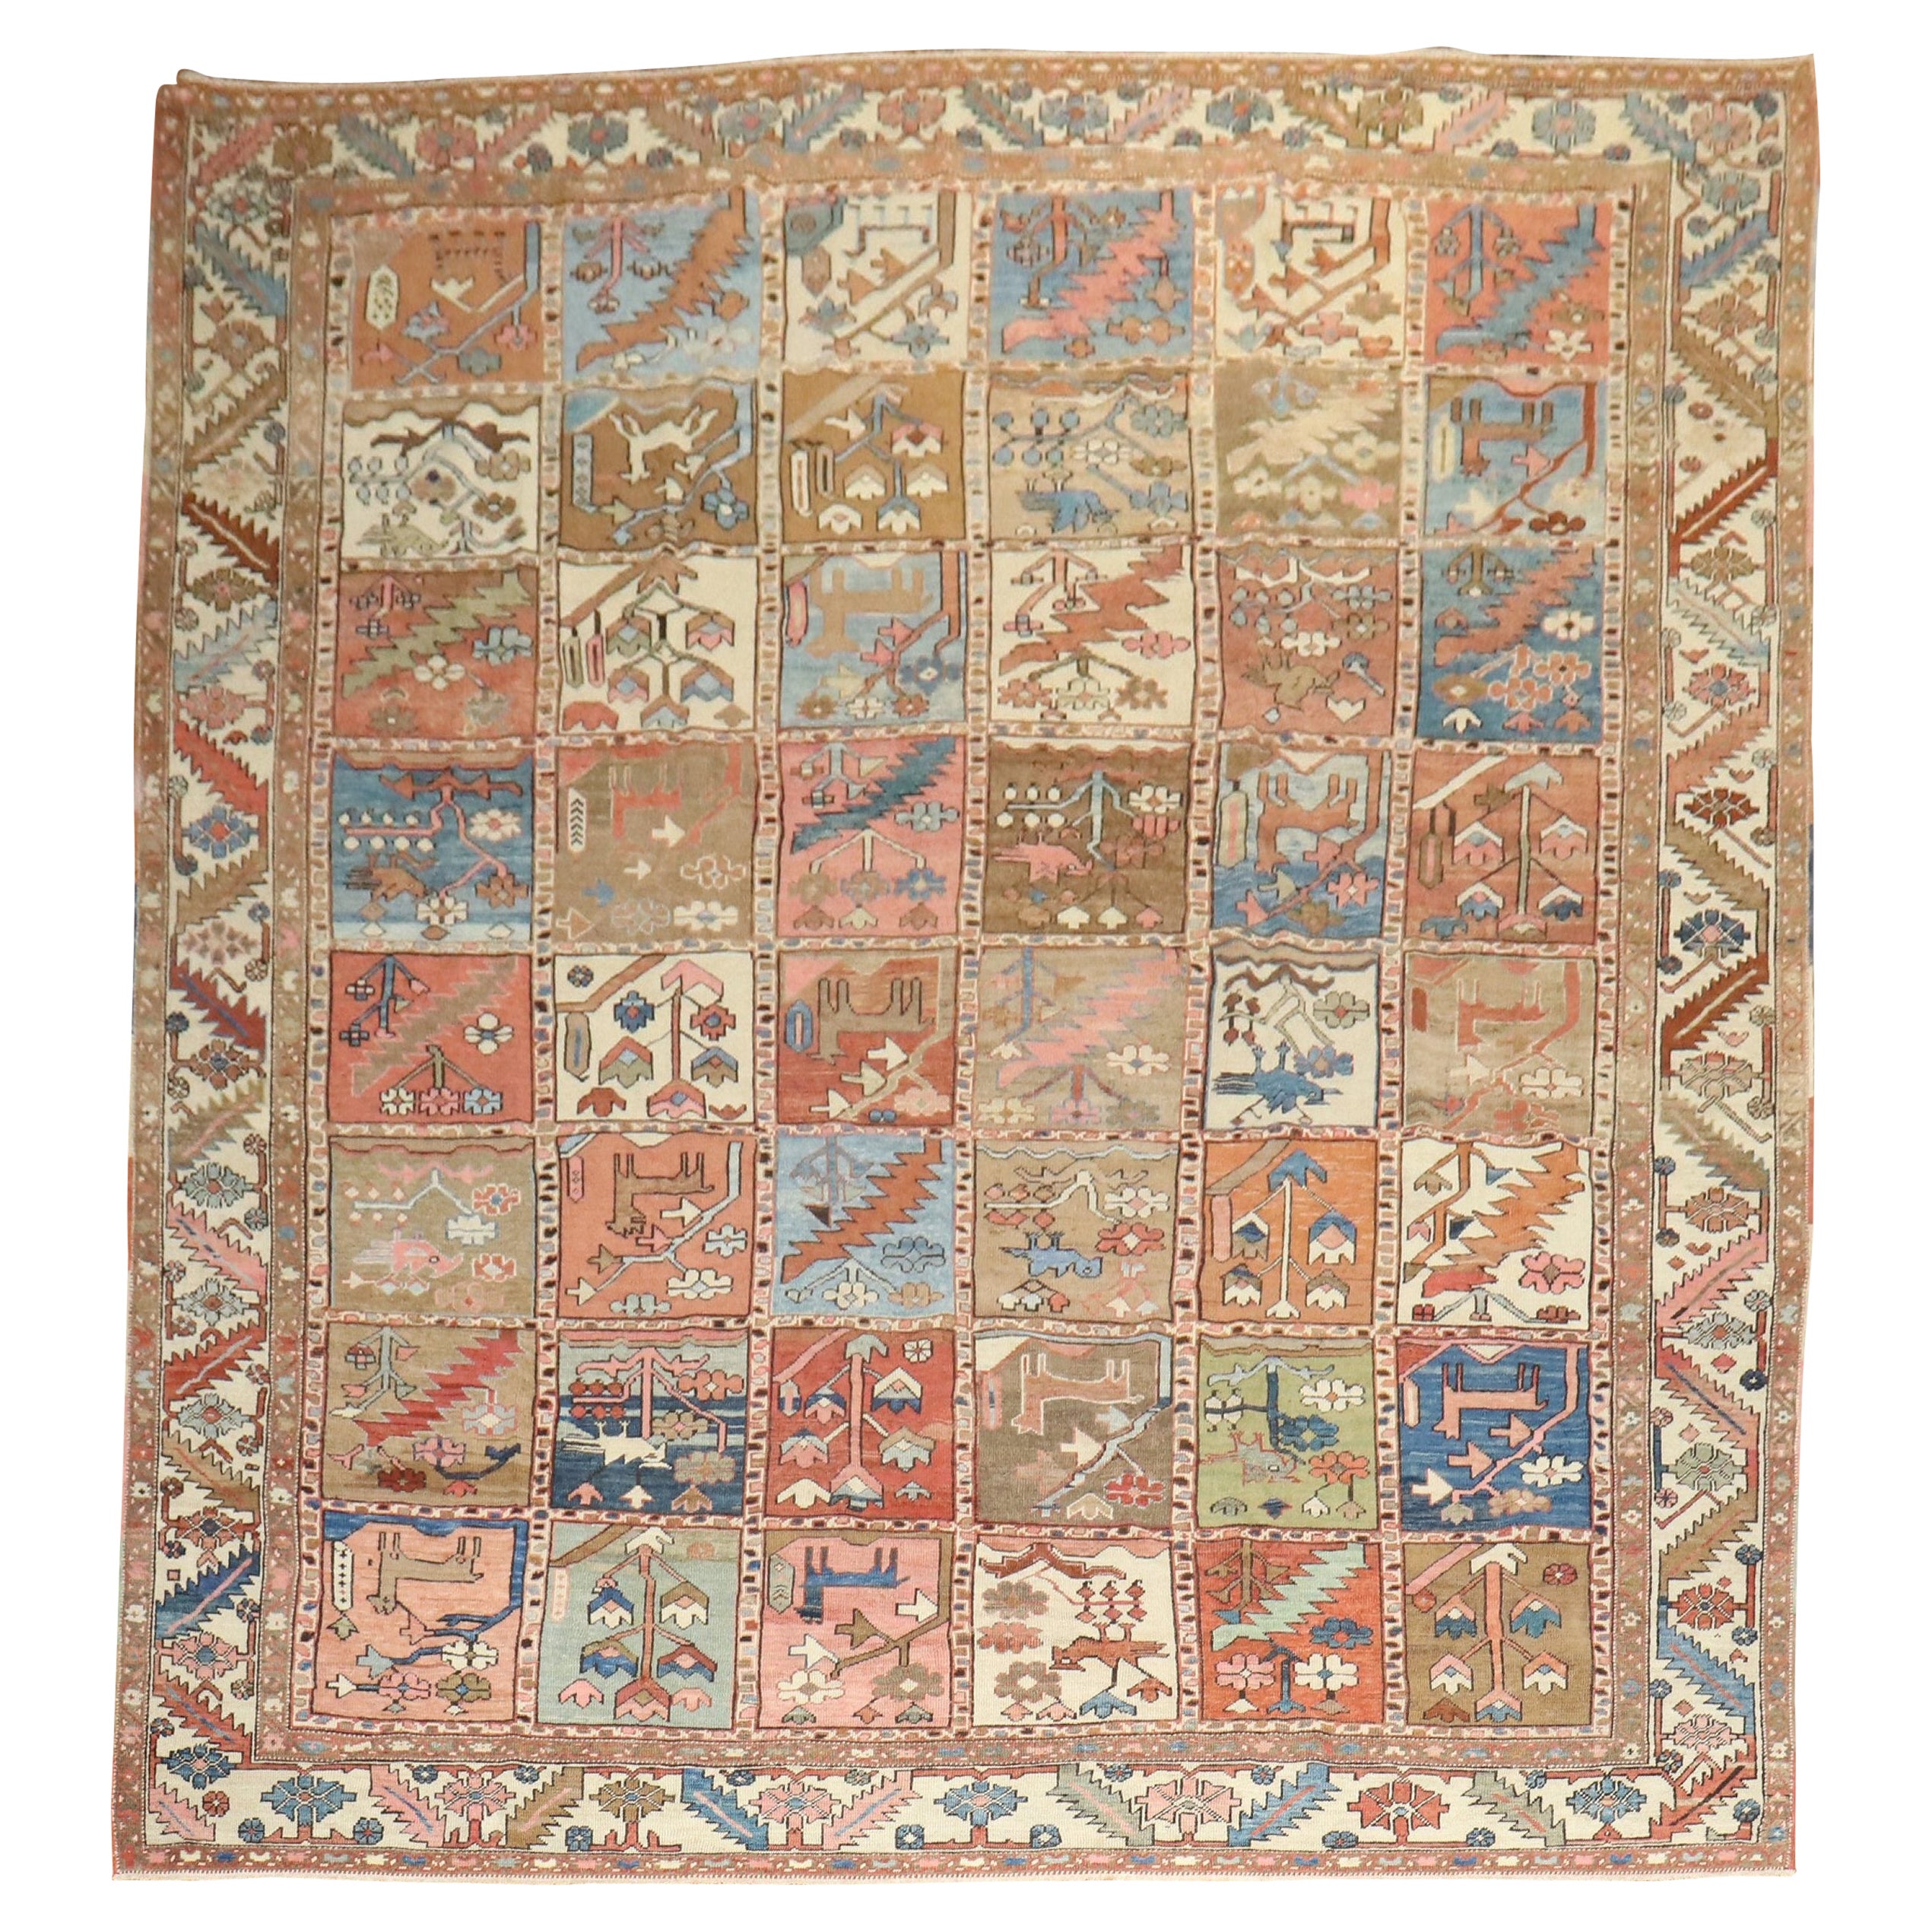 Antique Persian Heriz Pictorial Room Size Rug